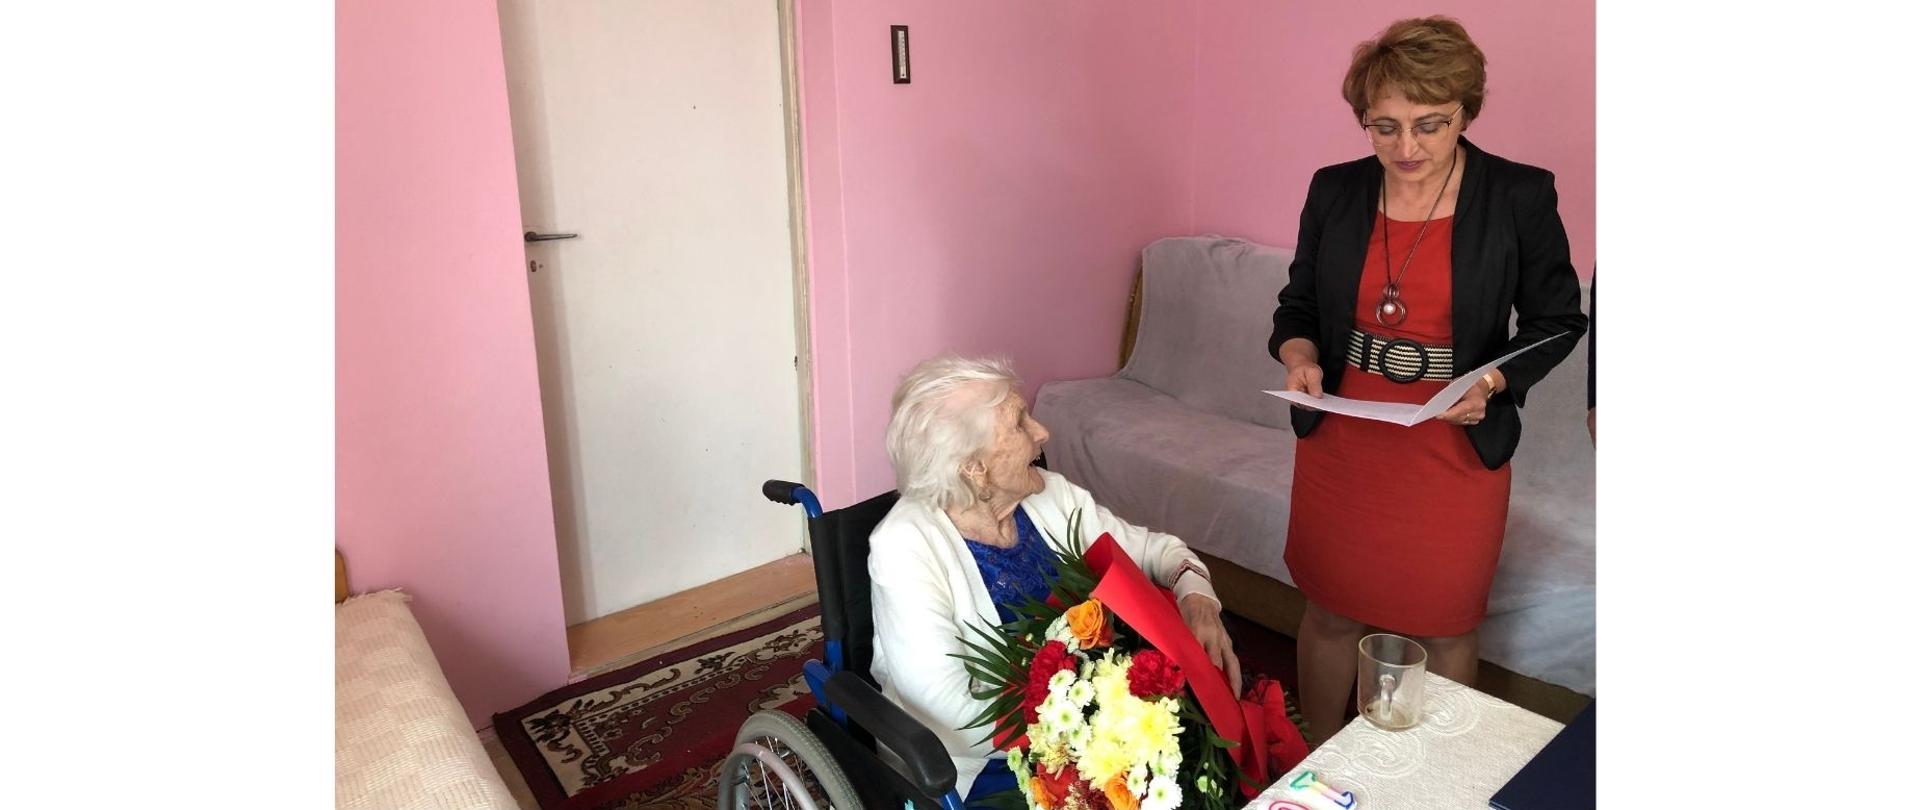 Na zdjęciu znajduje się starsza kobieta na wózku a po prawej stronie stoi kobieta w czerwonej sukience i odczytuje list